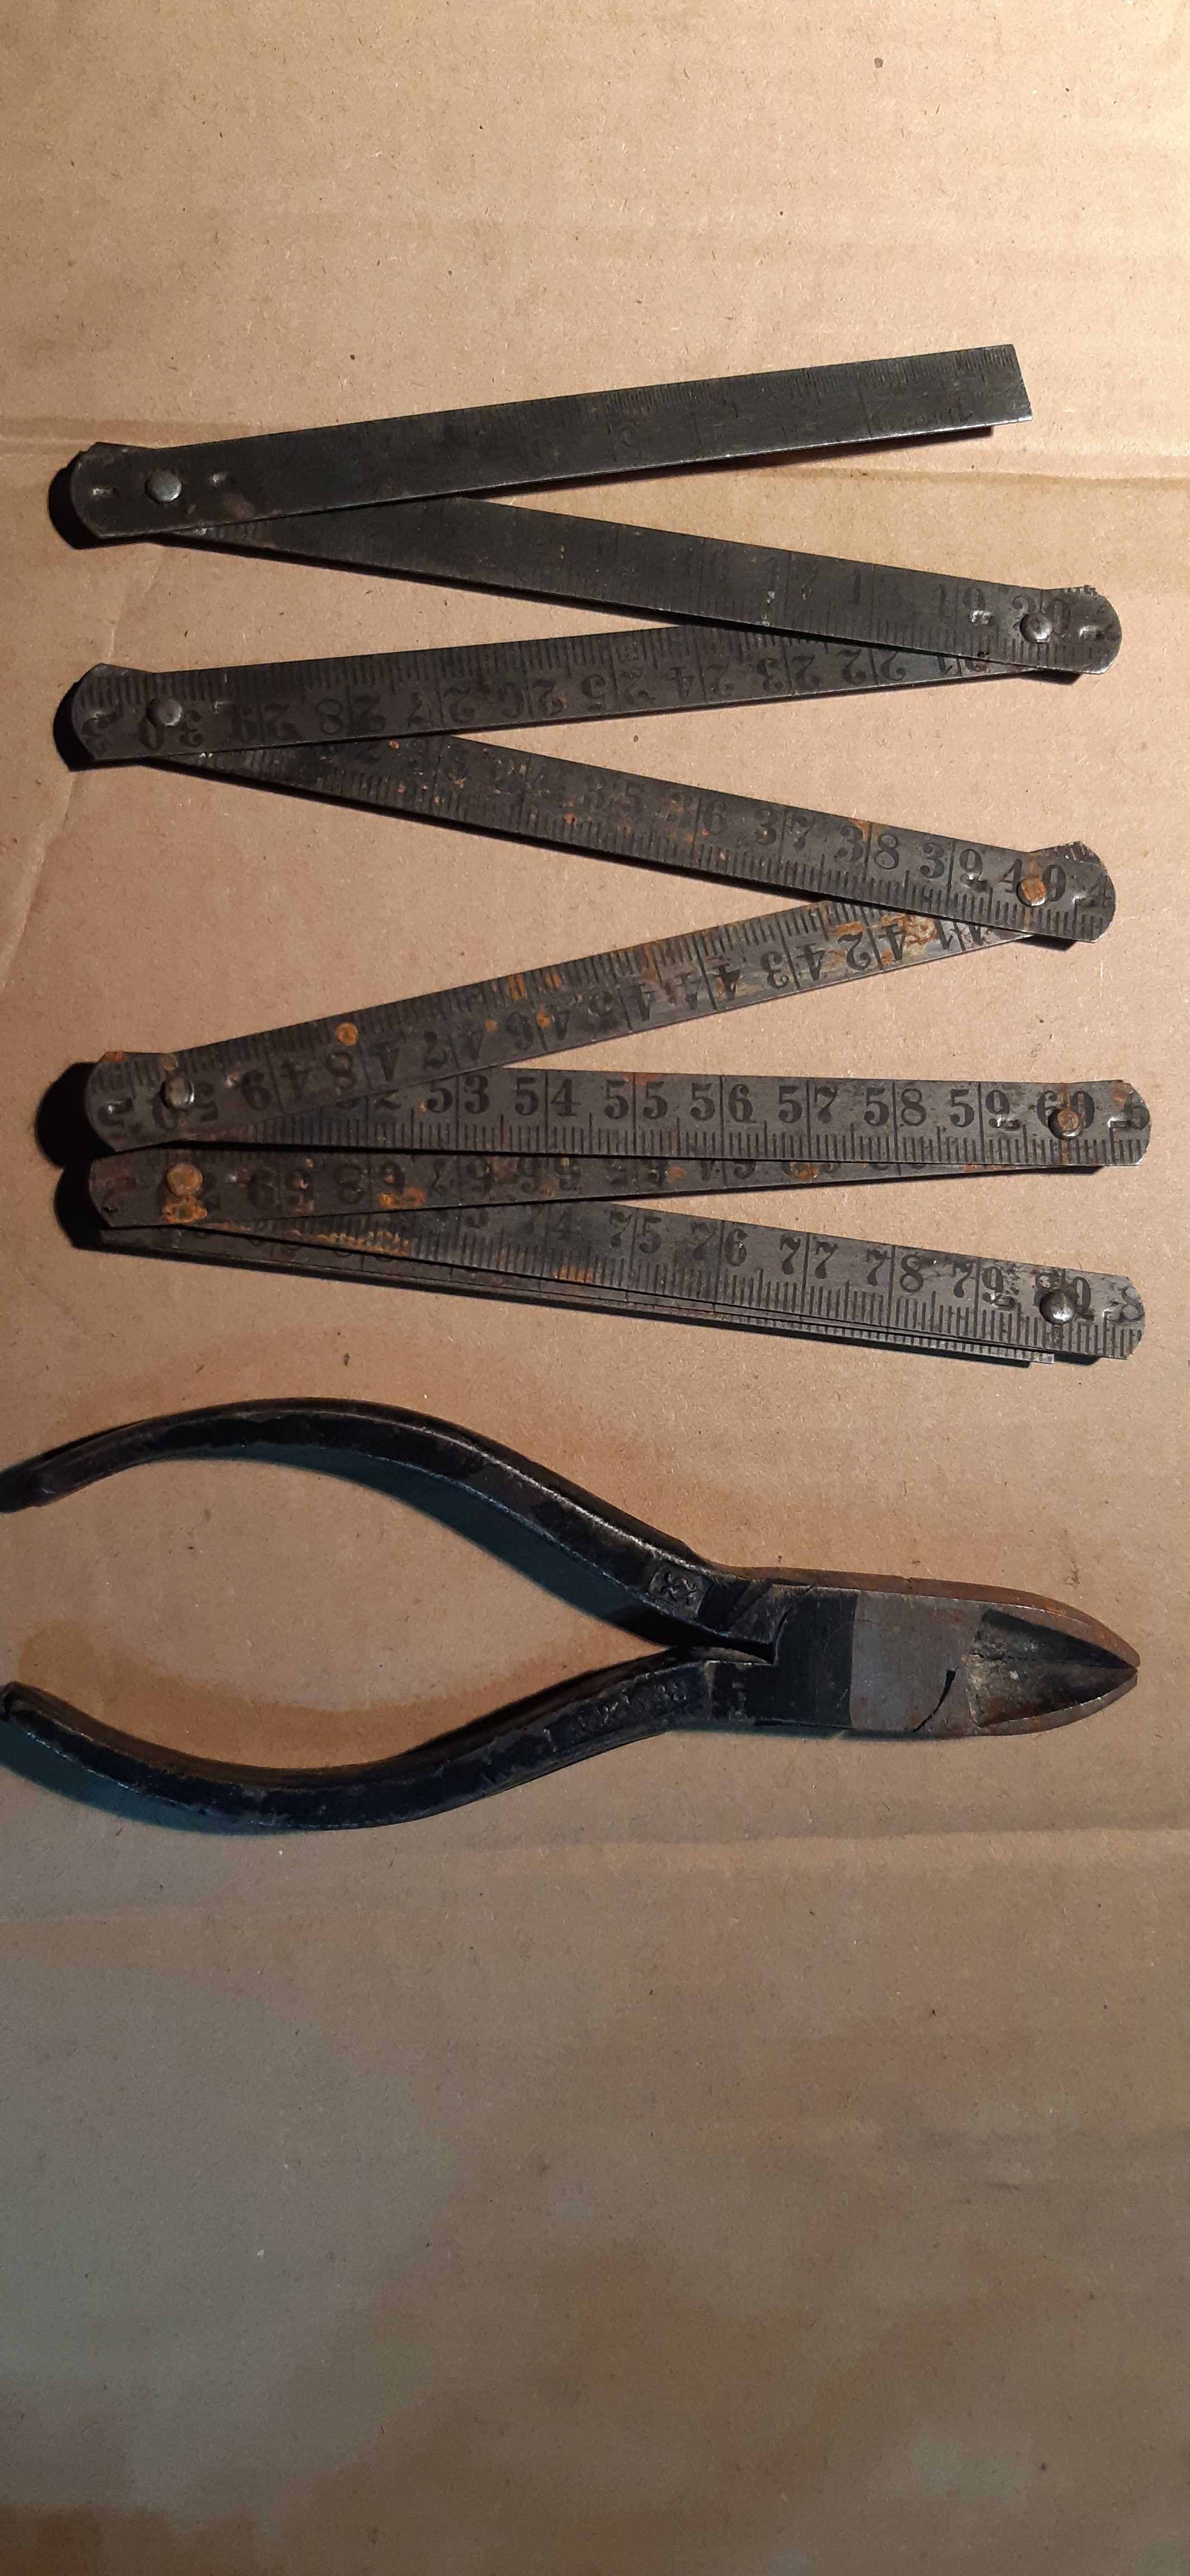 stare narzędzia, metalowy metr i kleszcze